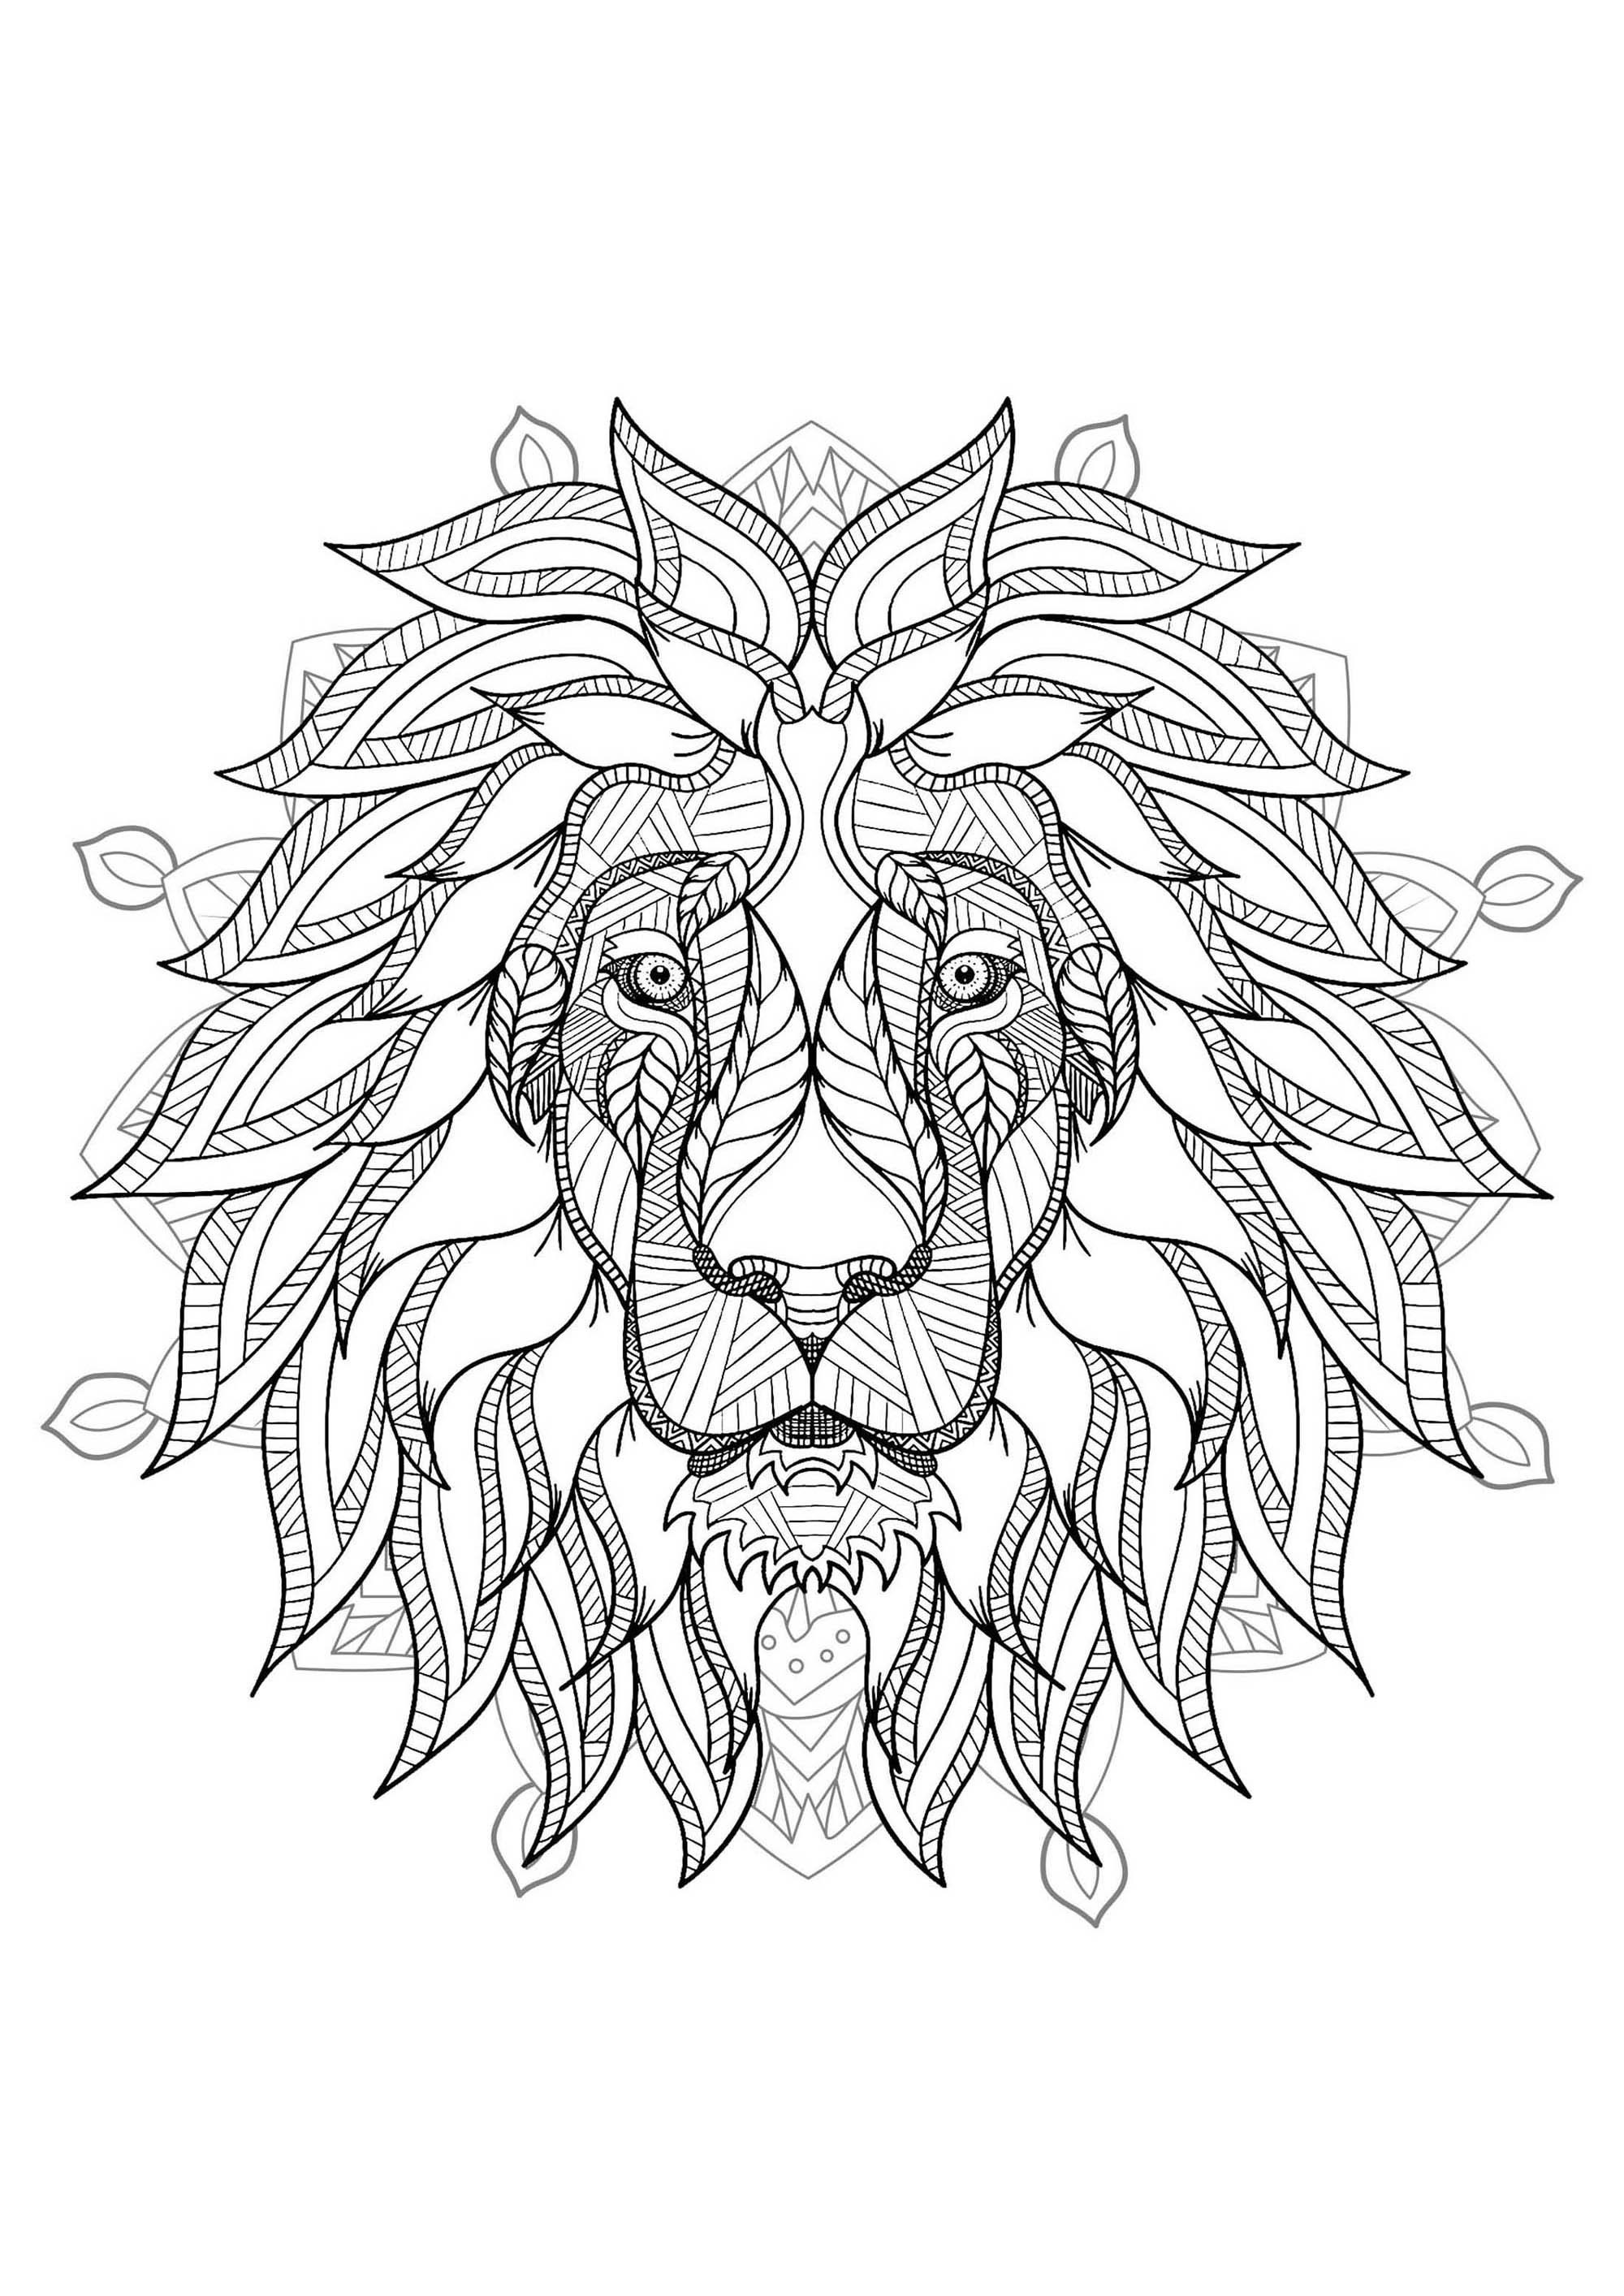 Uma Mandala com o rei dos animais: o leão, para os que preferem colorir coisas concretas e vivas.